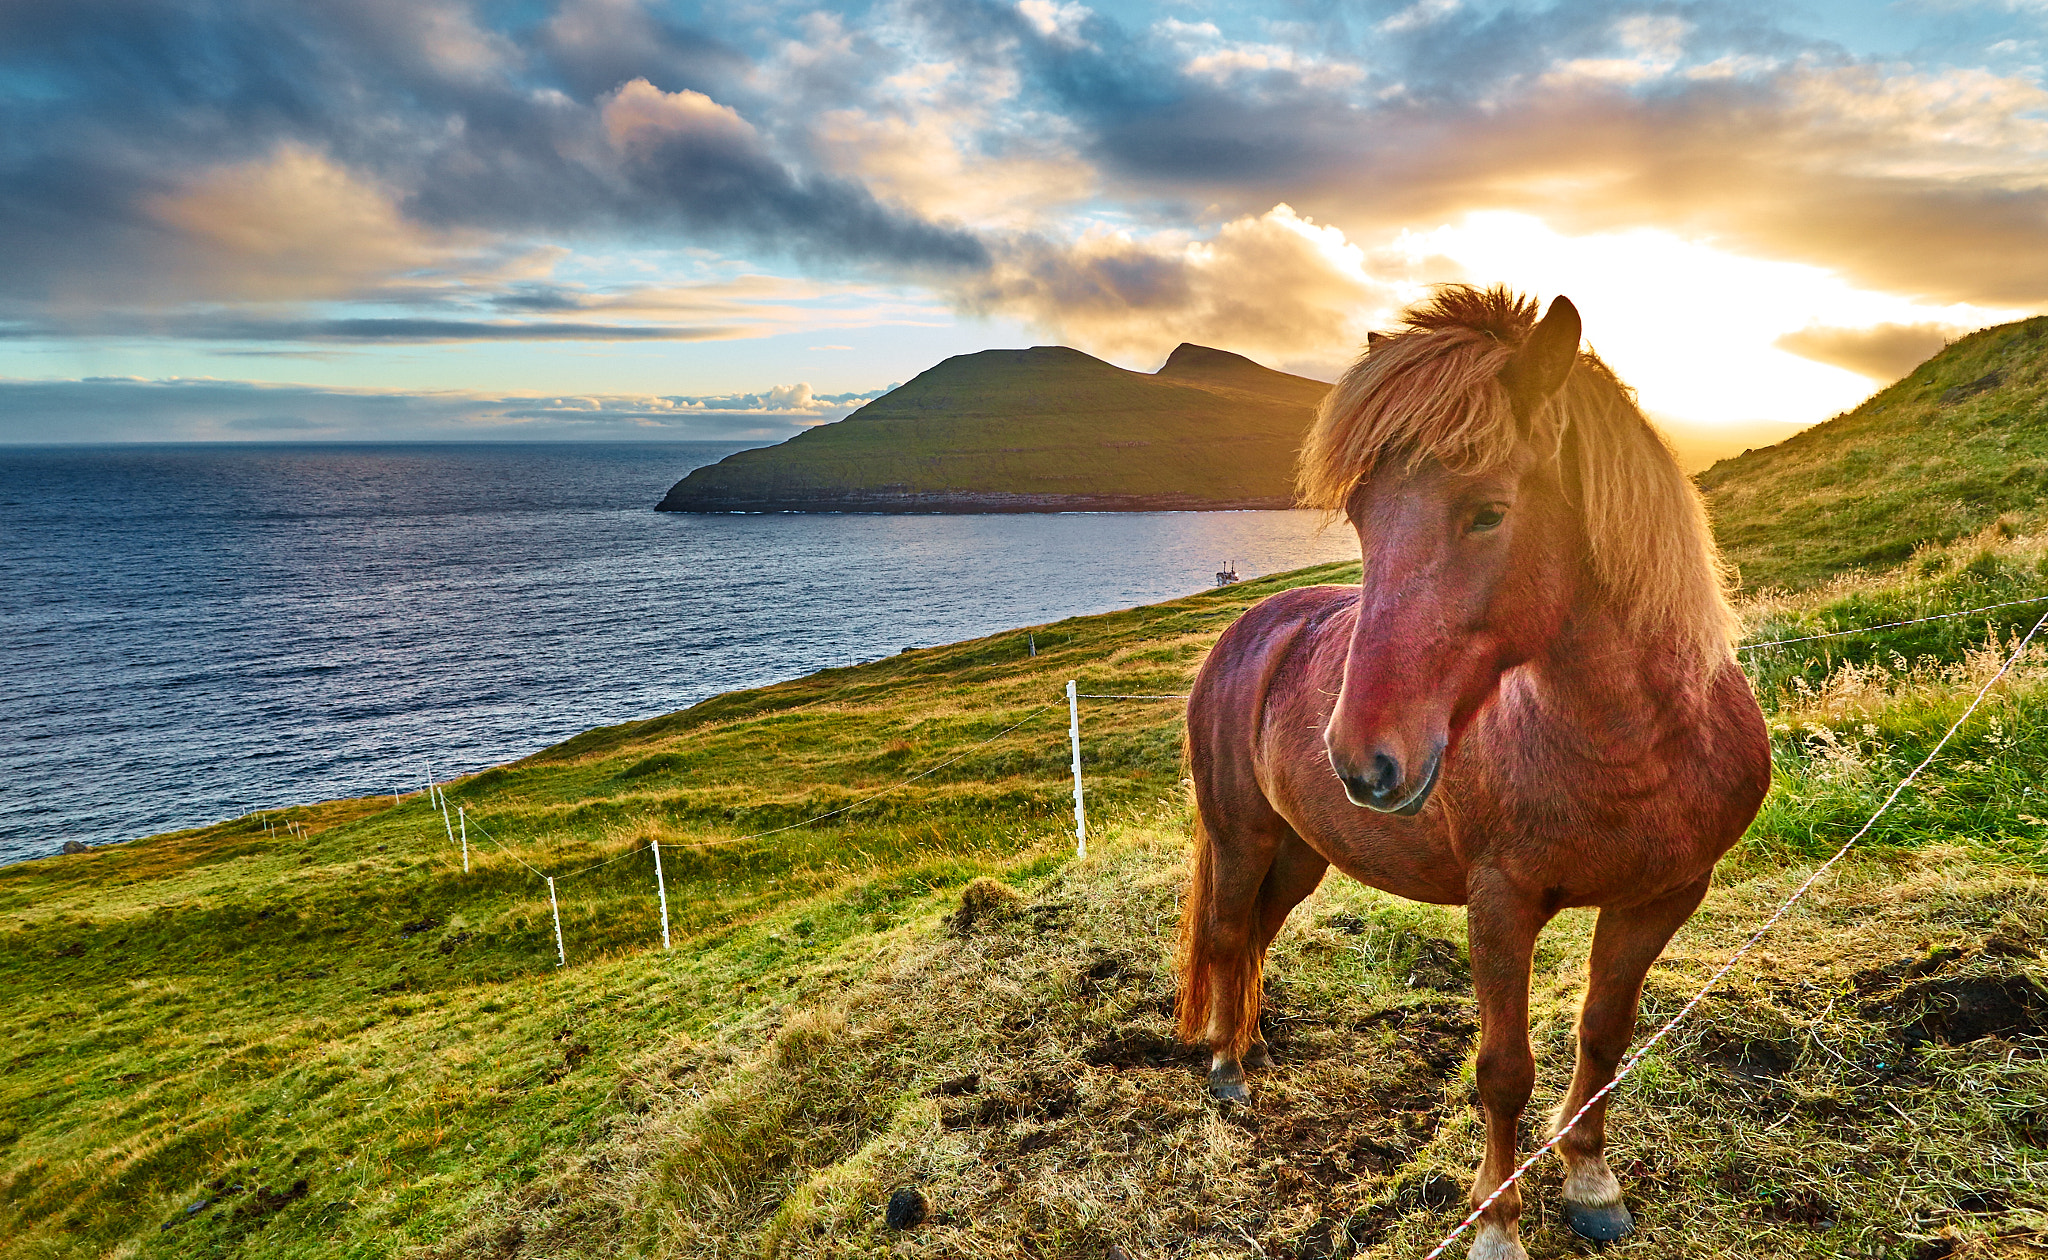 Sony a7 + FE 21mm F2.8 sample photo. Faroe's horse photography